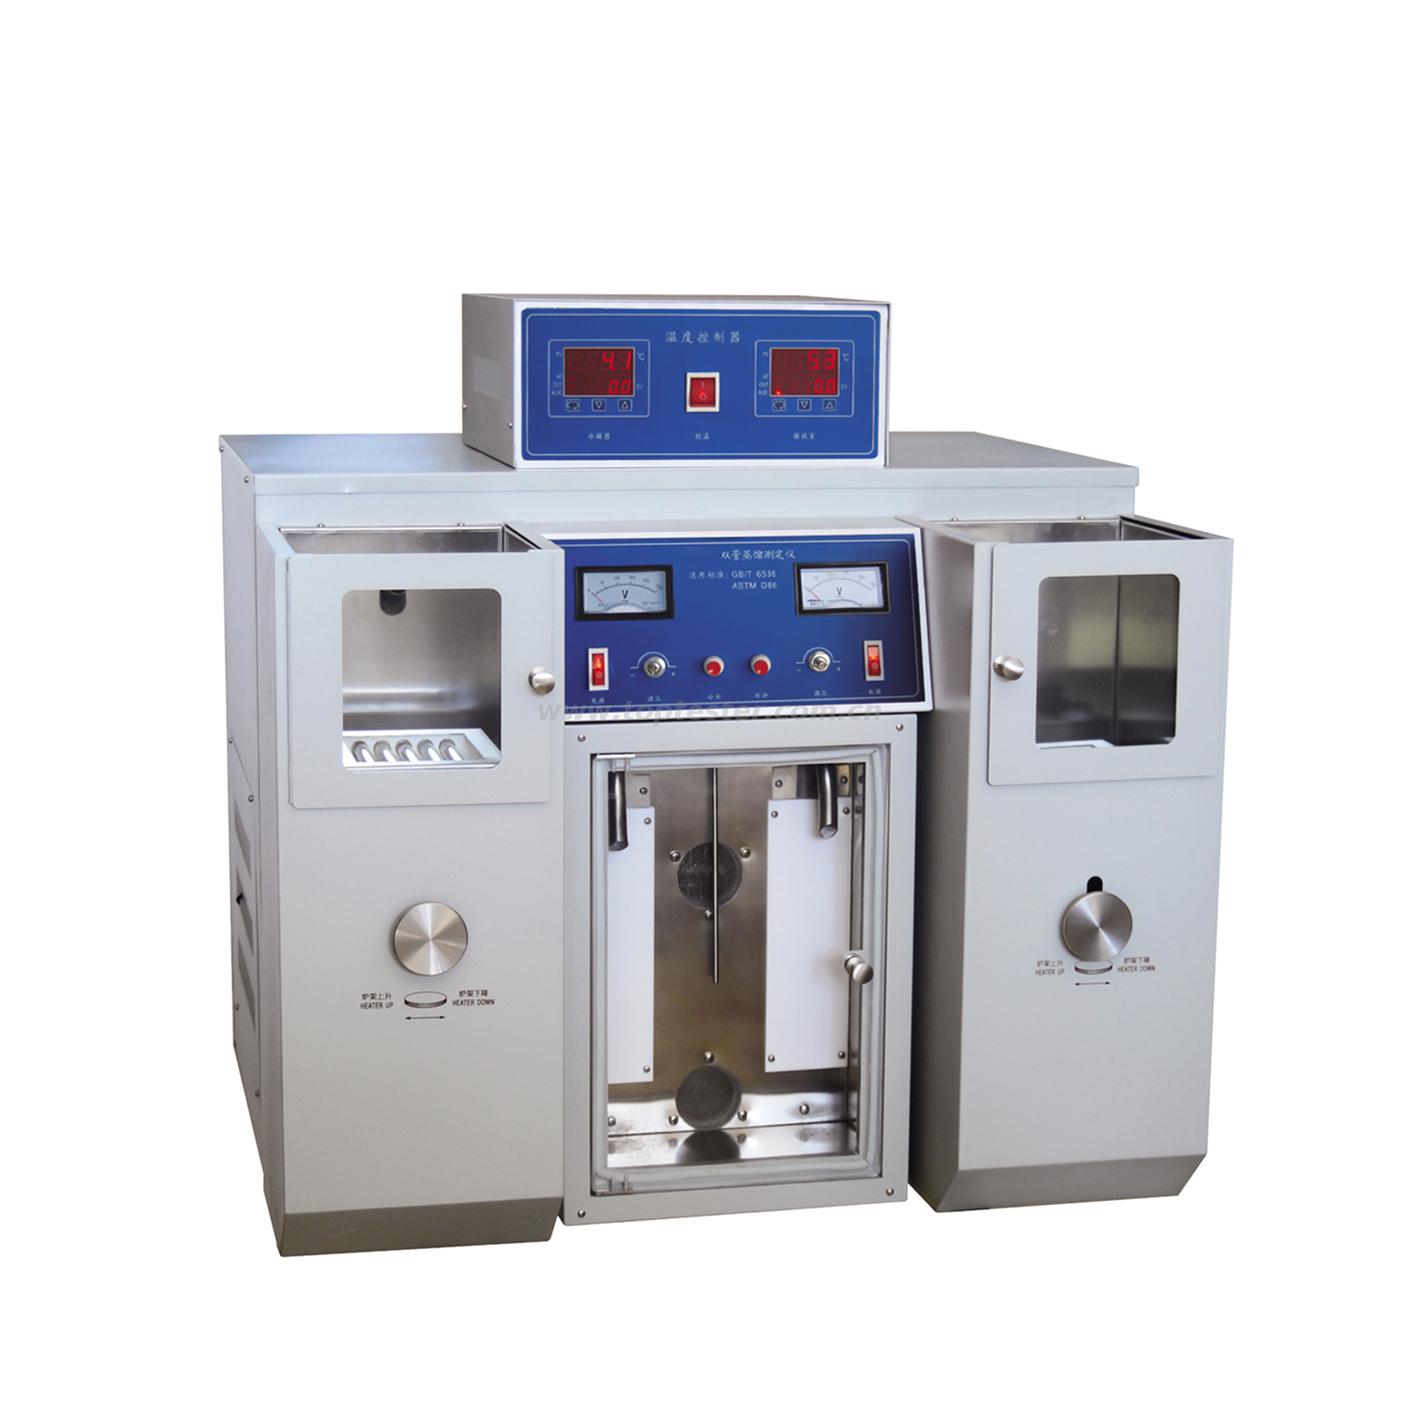 Probador de destilación de doble tubo ASTM D86 (tipo manual) Modelo DIL-002A